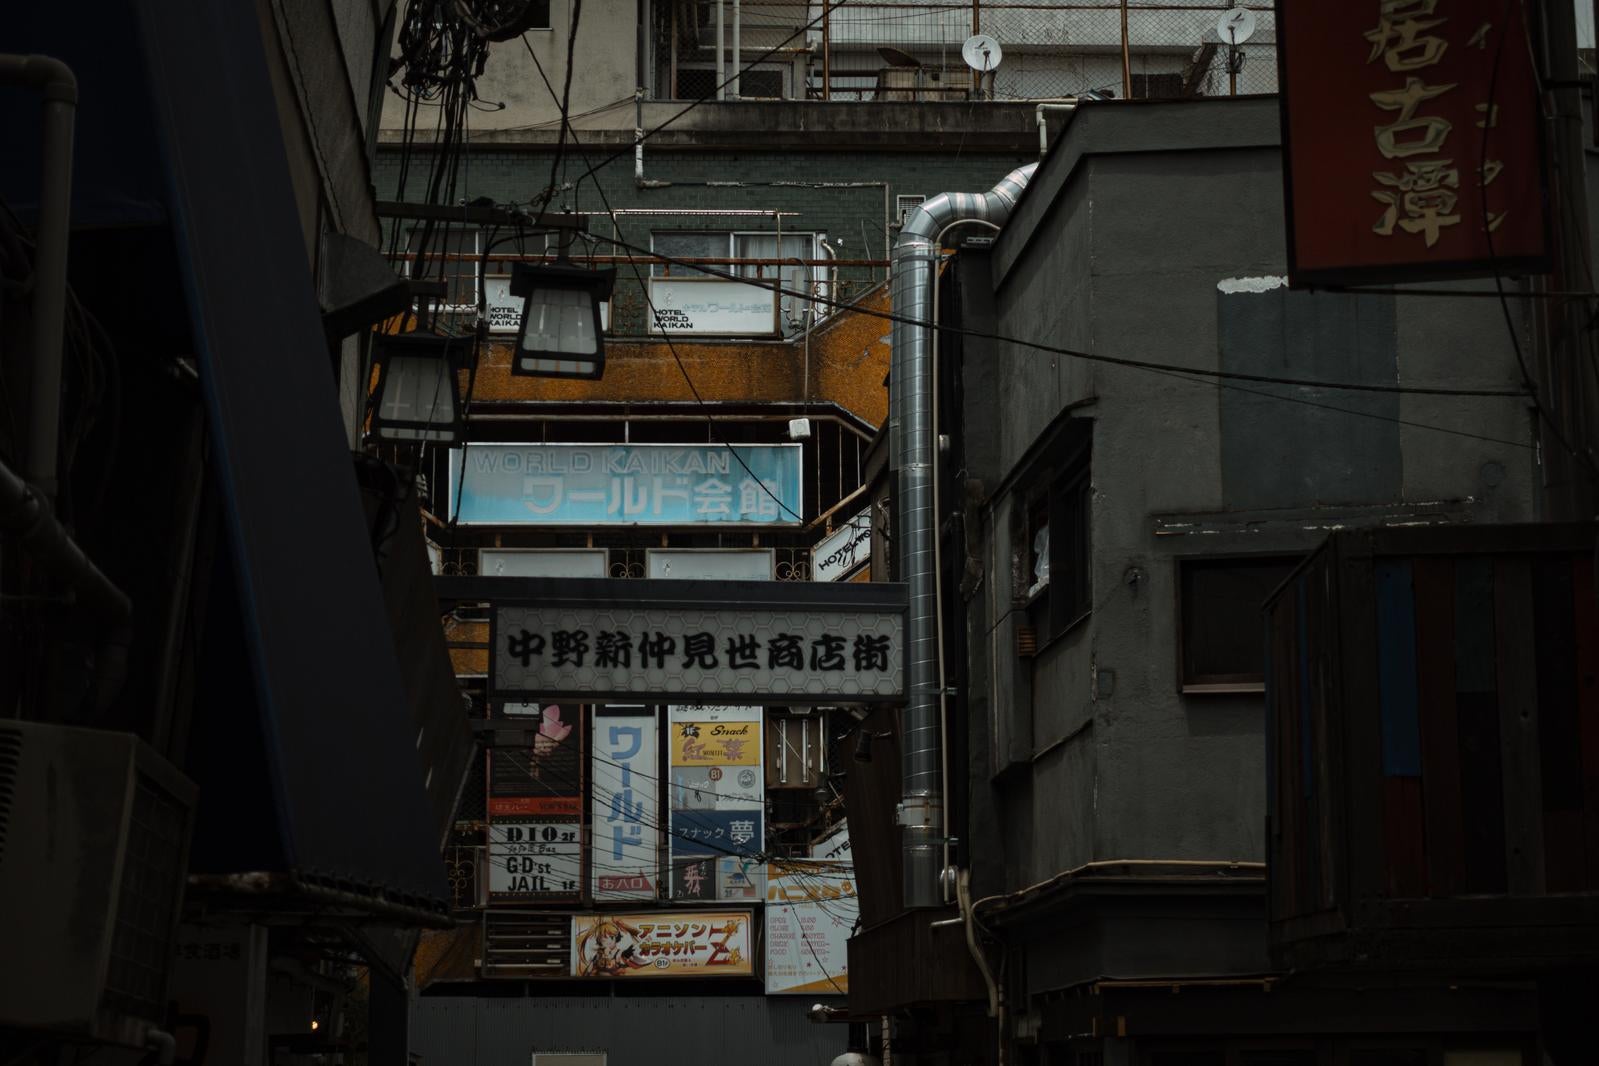 「中野新仲見世商店街の看板」の写真